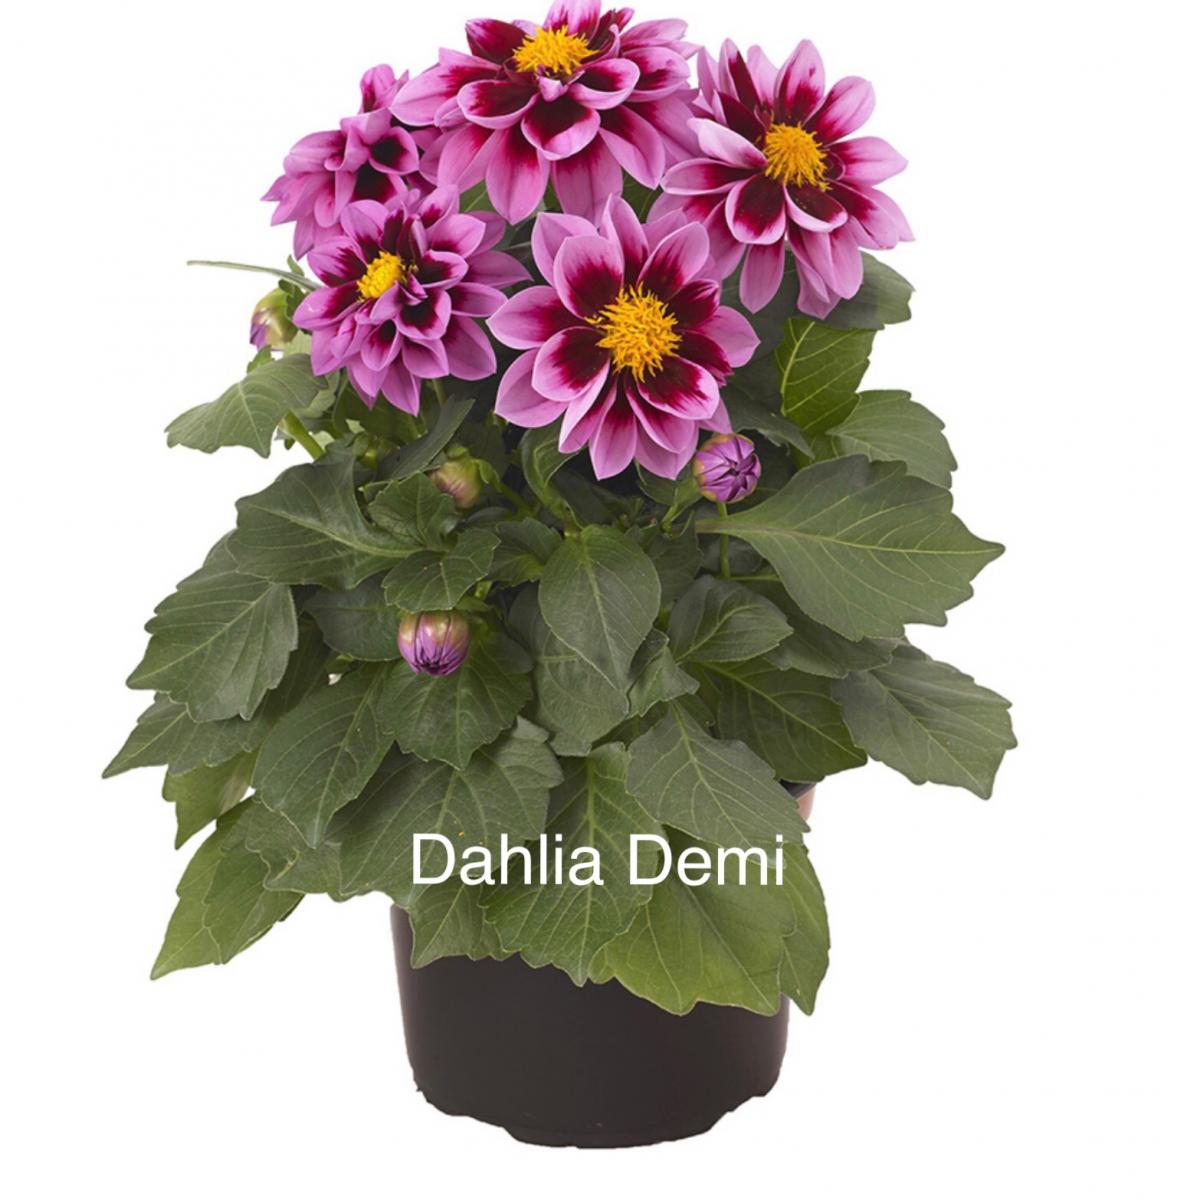 Dahlia plant